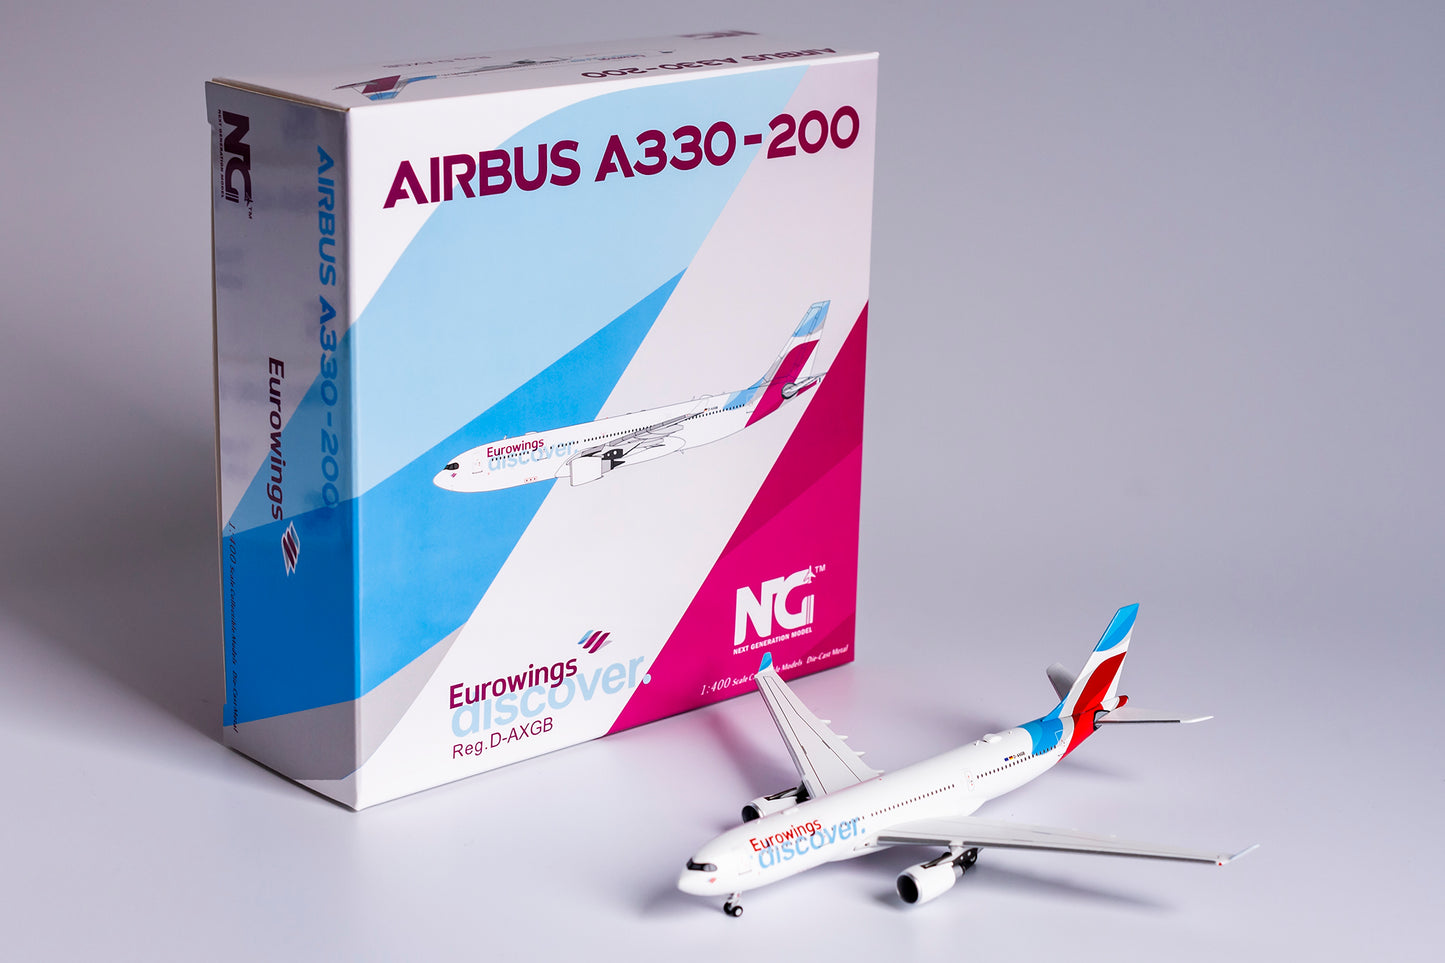 1:400 NG Models Eurowings Airbus A330-200 D-AXGB 61035